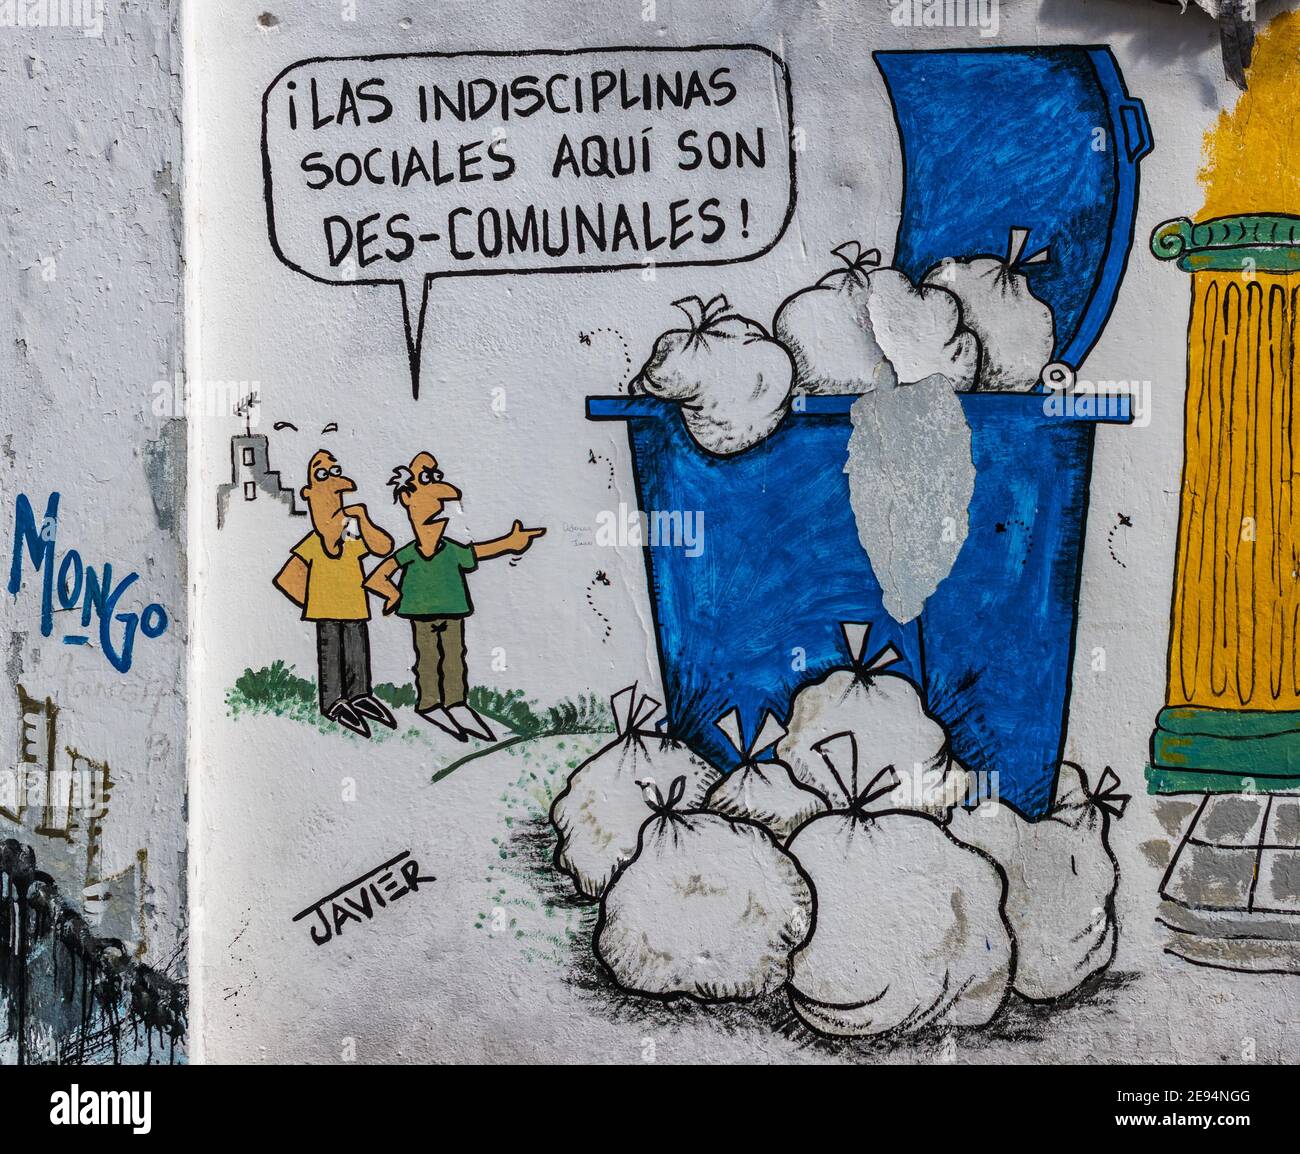 L'humour cubain peint dans les murs de 'Melaito' qui est une publication hebdomadaire de l'humour local. Le thème est « l'indiscipline sociale » Banque D'Images